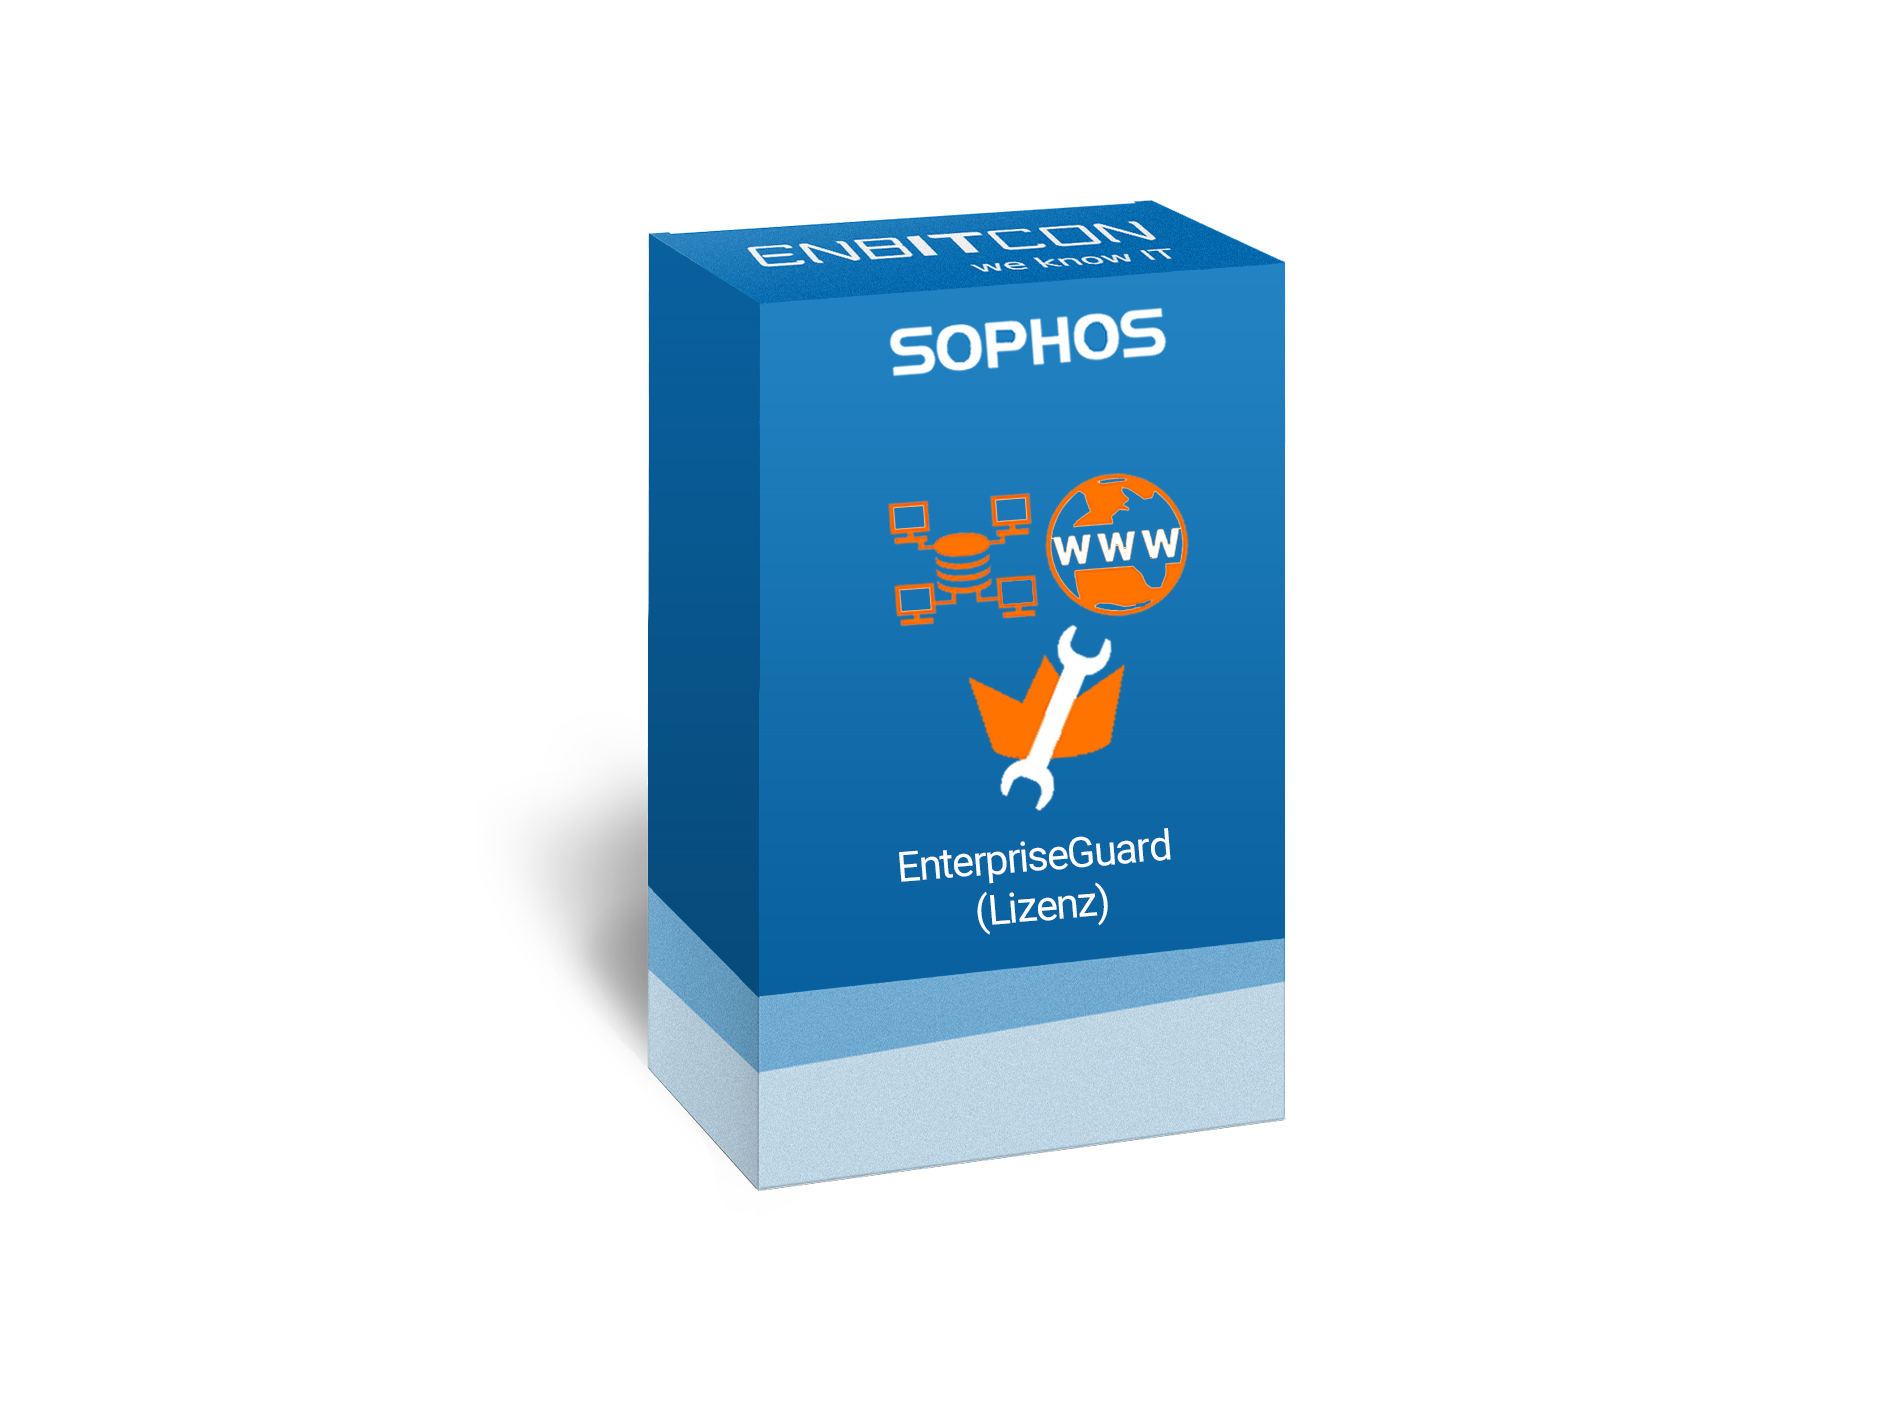 Sophos Enterprise Guard Lizenz Vorschaubild bestehend aus einem blauen Schild, indem sich ein orangenes Computernetz, WWW und ein Schraubenschlüssel befinden